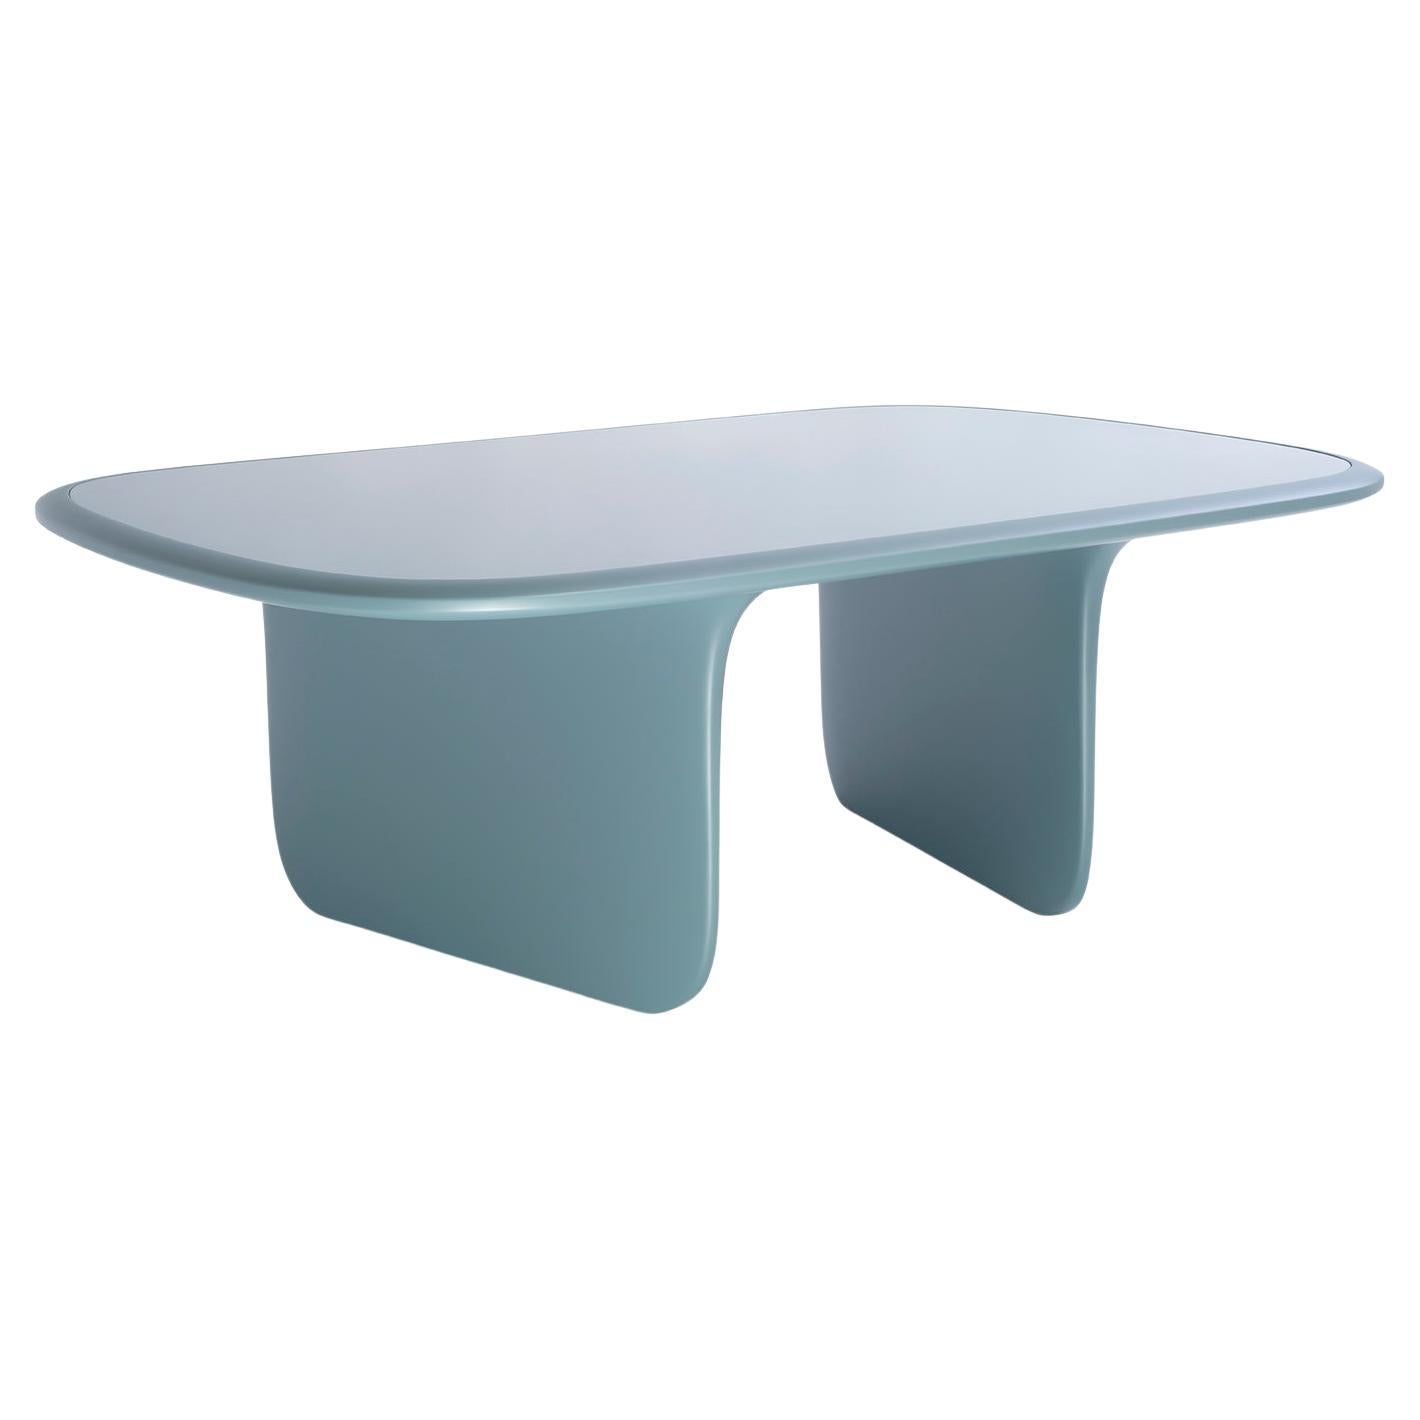 Table basse O, design by Matteo Cibic, produit par Scapin Collezioni

Dans sa version table basse, la table O conserve la légèreté d'une table de salle à manger, avec des pieds fins et effilés, mais se décline en bleu air force pour se fondre dans